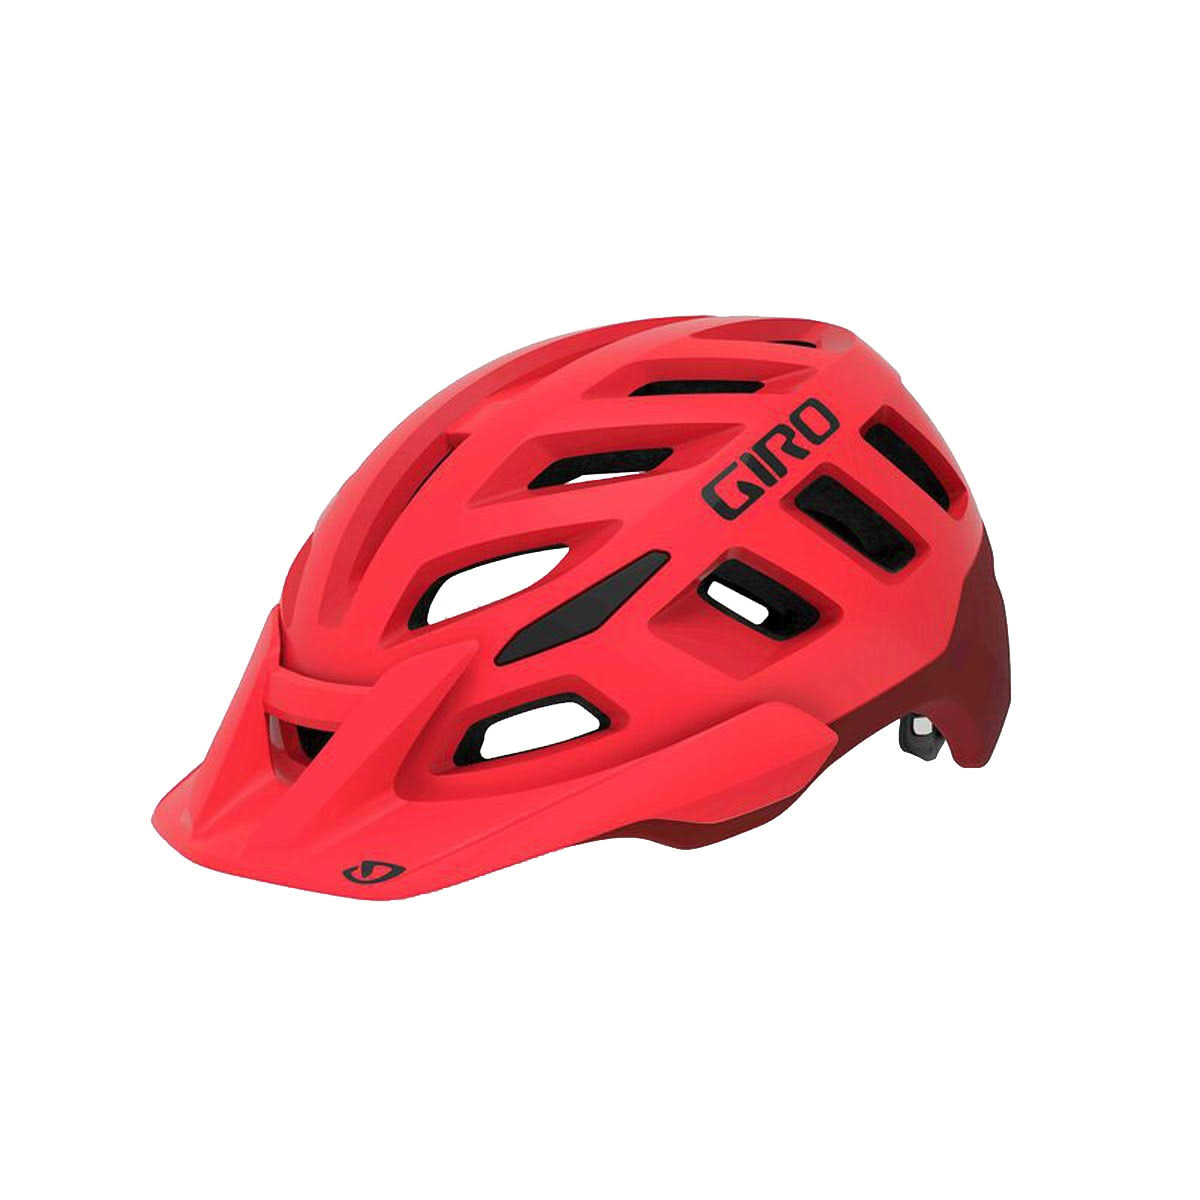 Giro Radix MIPS Helmet - Matte Bright Red & Dark Red